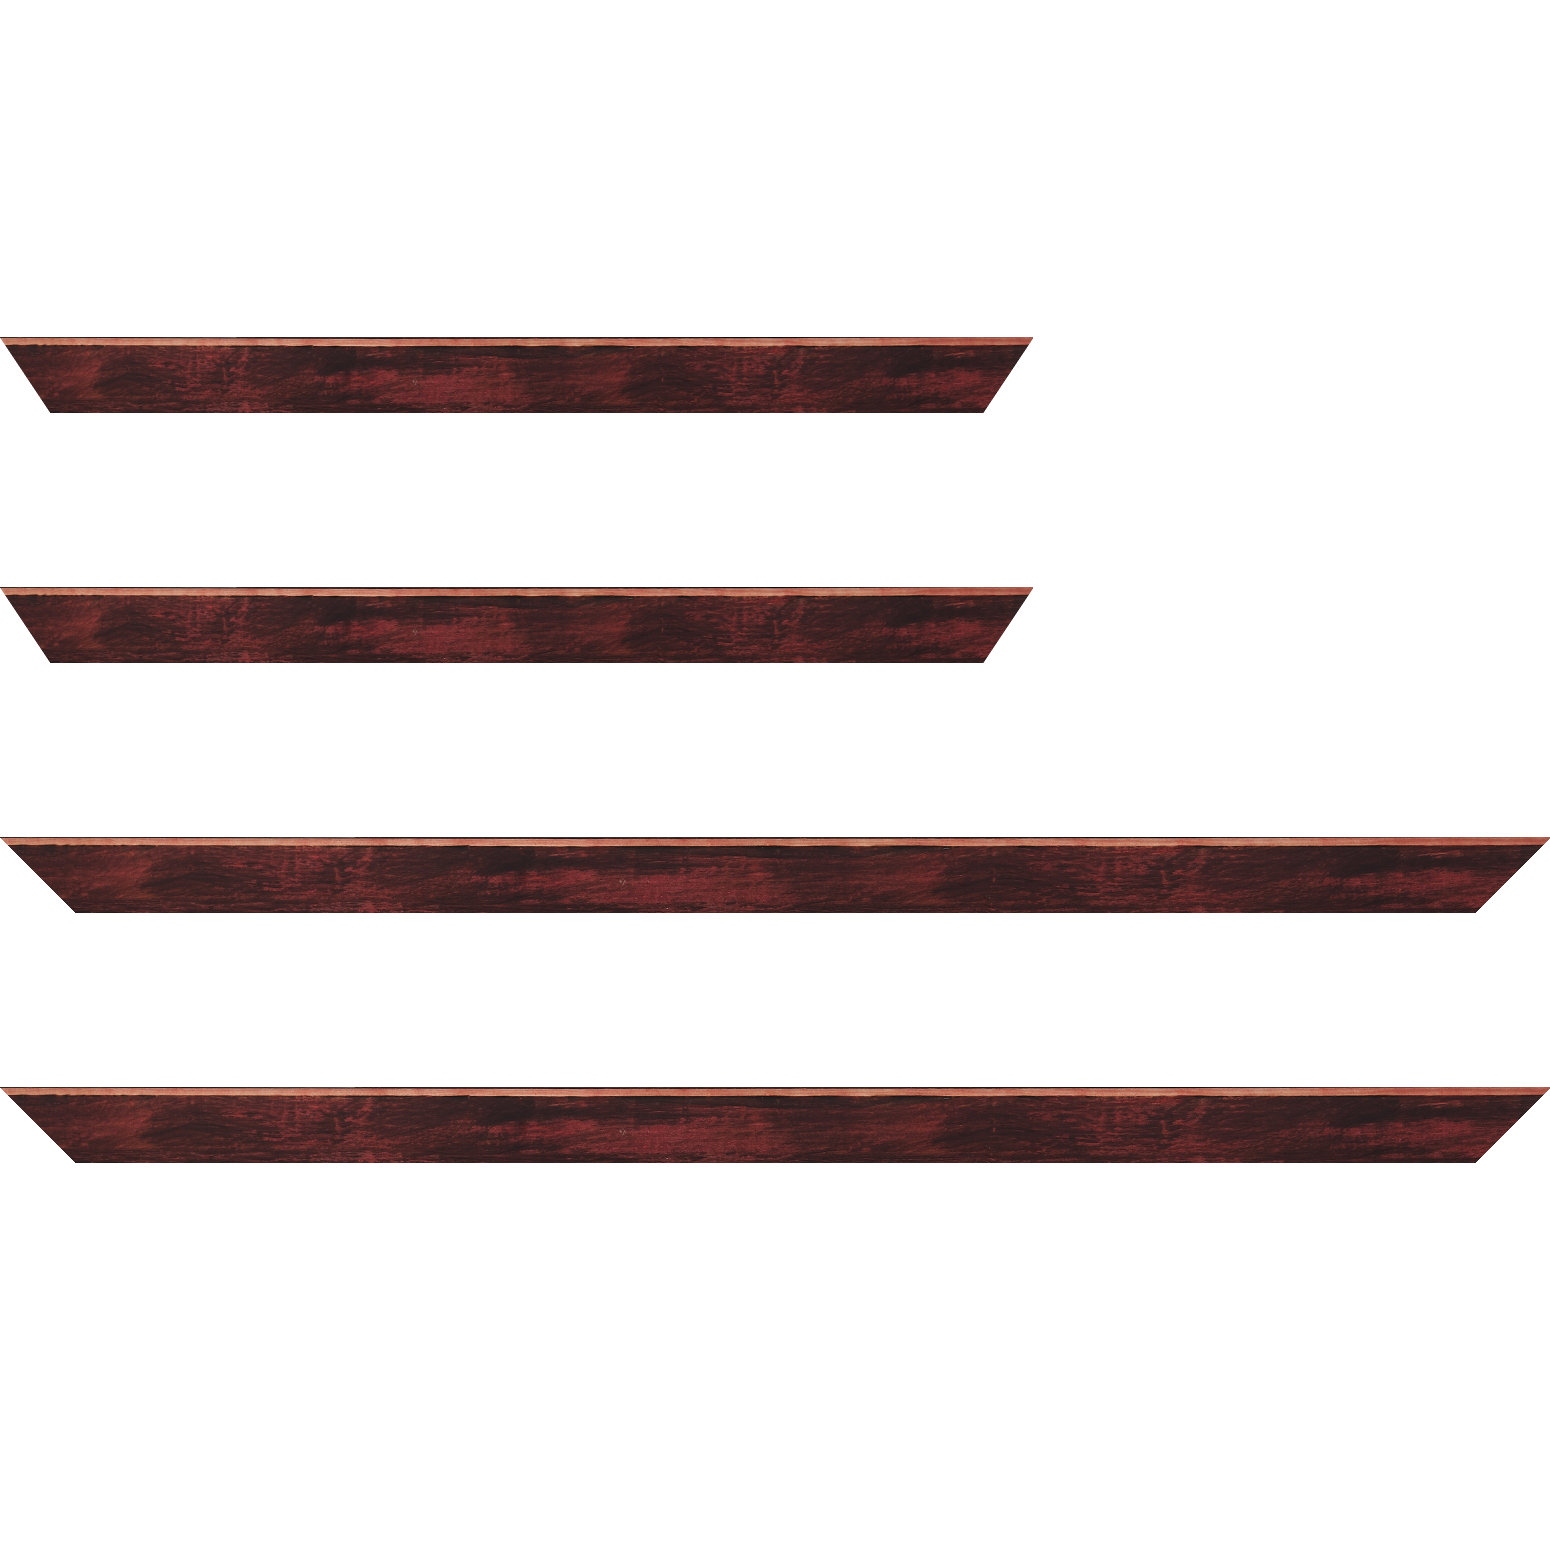 Baguette bois profil arrondi en pente plongeant largeur 2.4cm couleur bordeaux effet ressuyé, angle du cadre extérieur filet naturel - 59.4x84.1